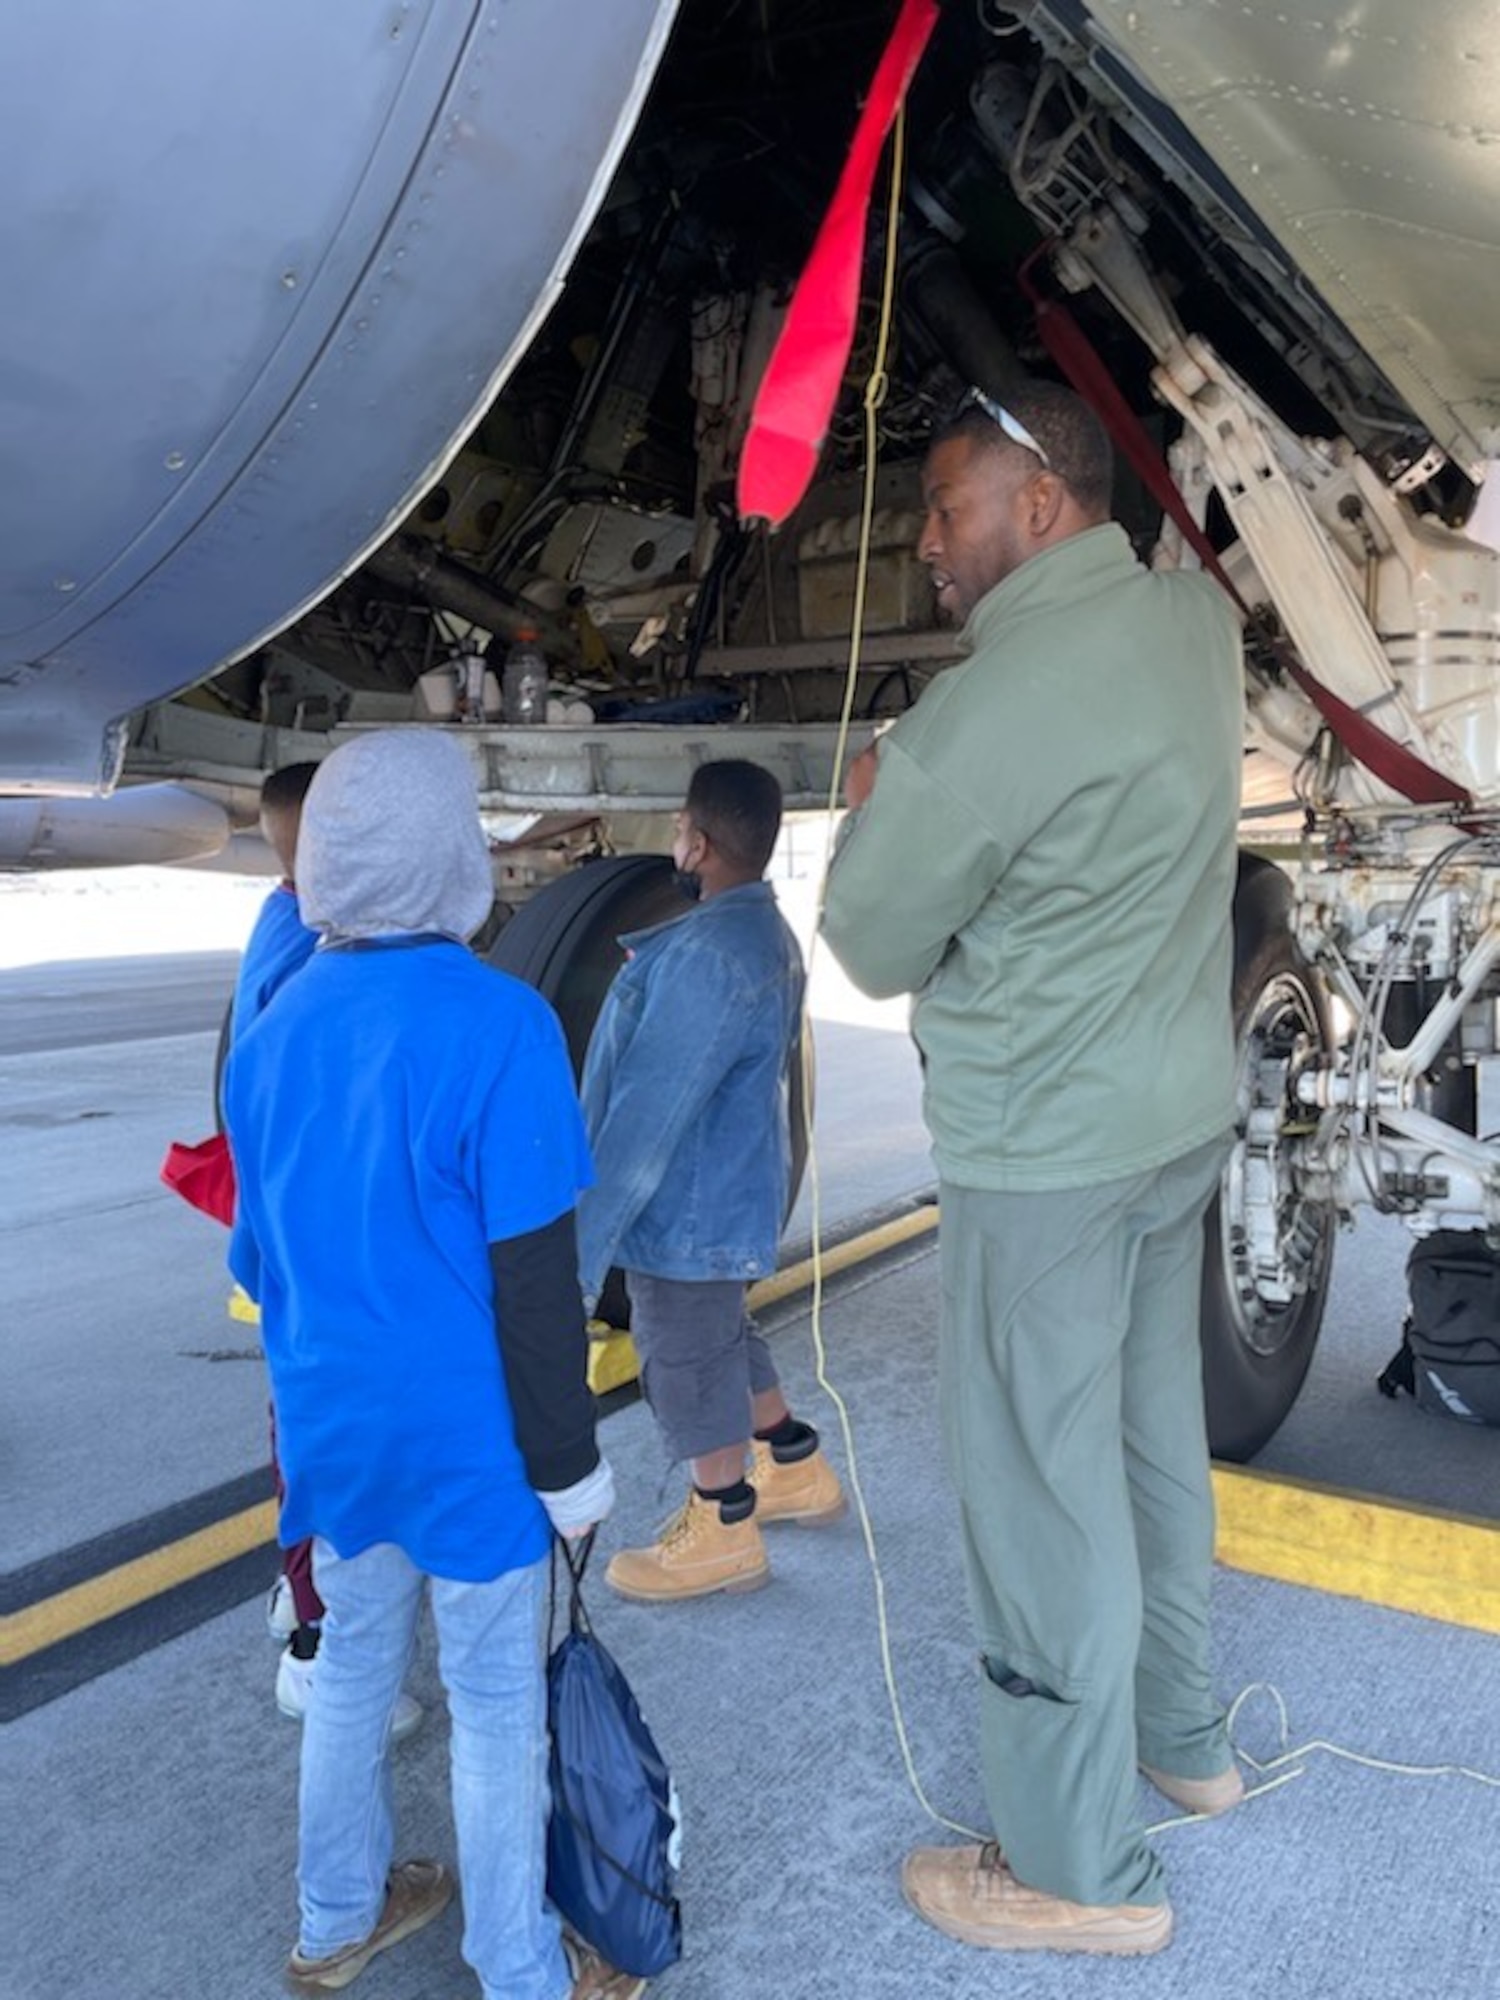 An Airman talks to children near an aircraft.